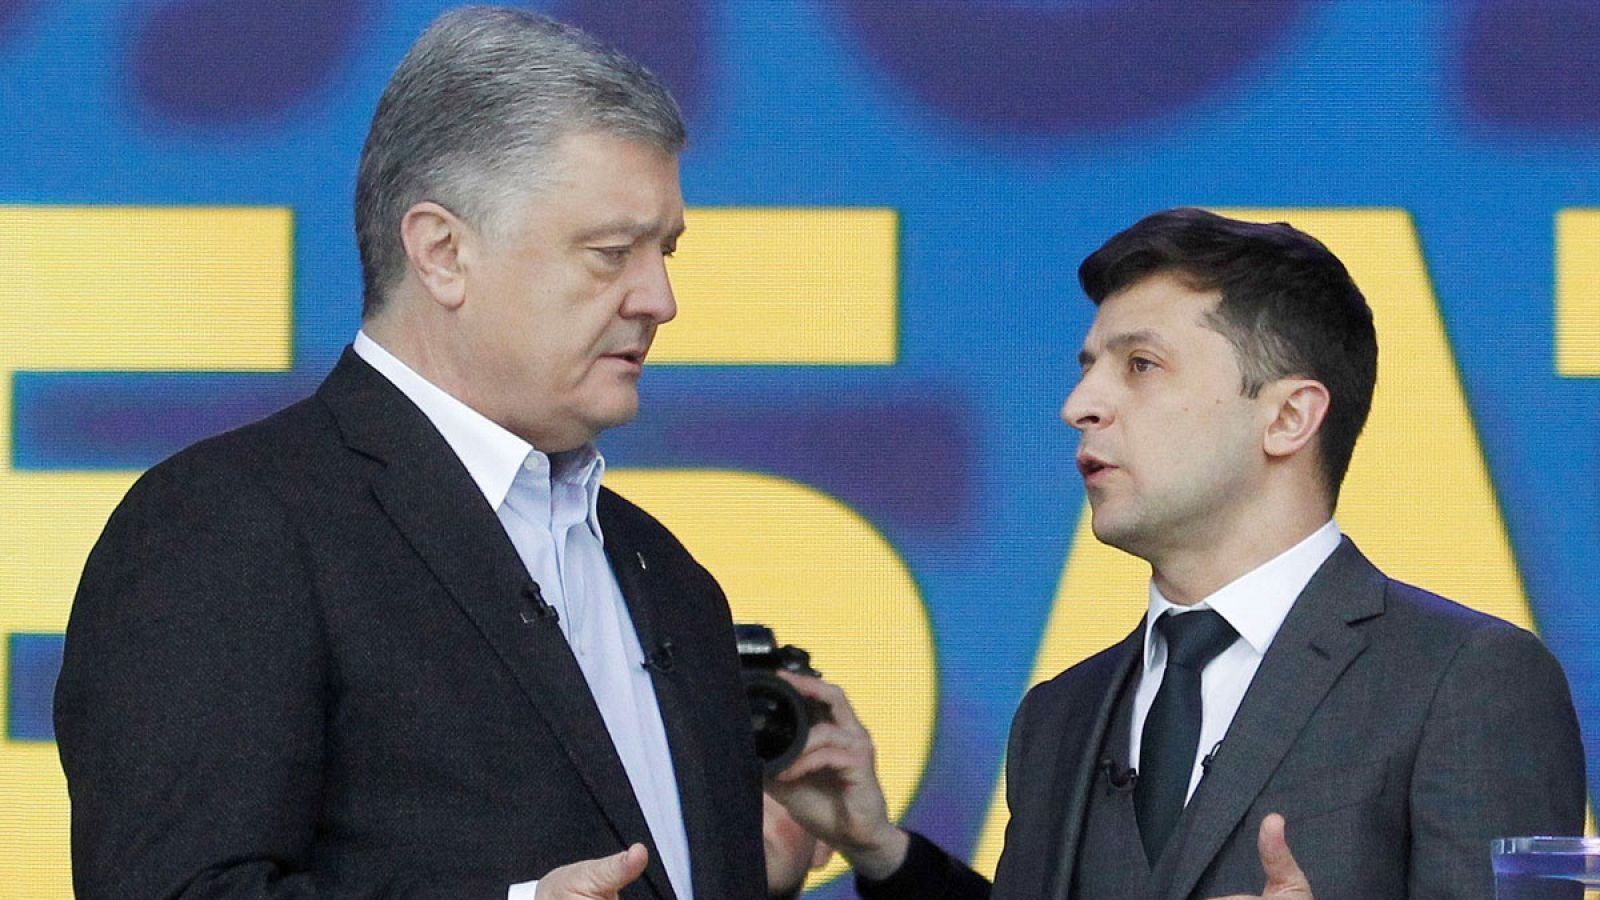 Los candidatos presidenciales Petró Poroshenko (i) y Vladímir Zelenski (d) durante el debate celebrado en el estadio Olímpico de Kiev (Ucrania).